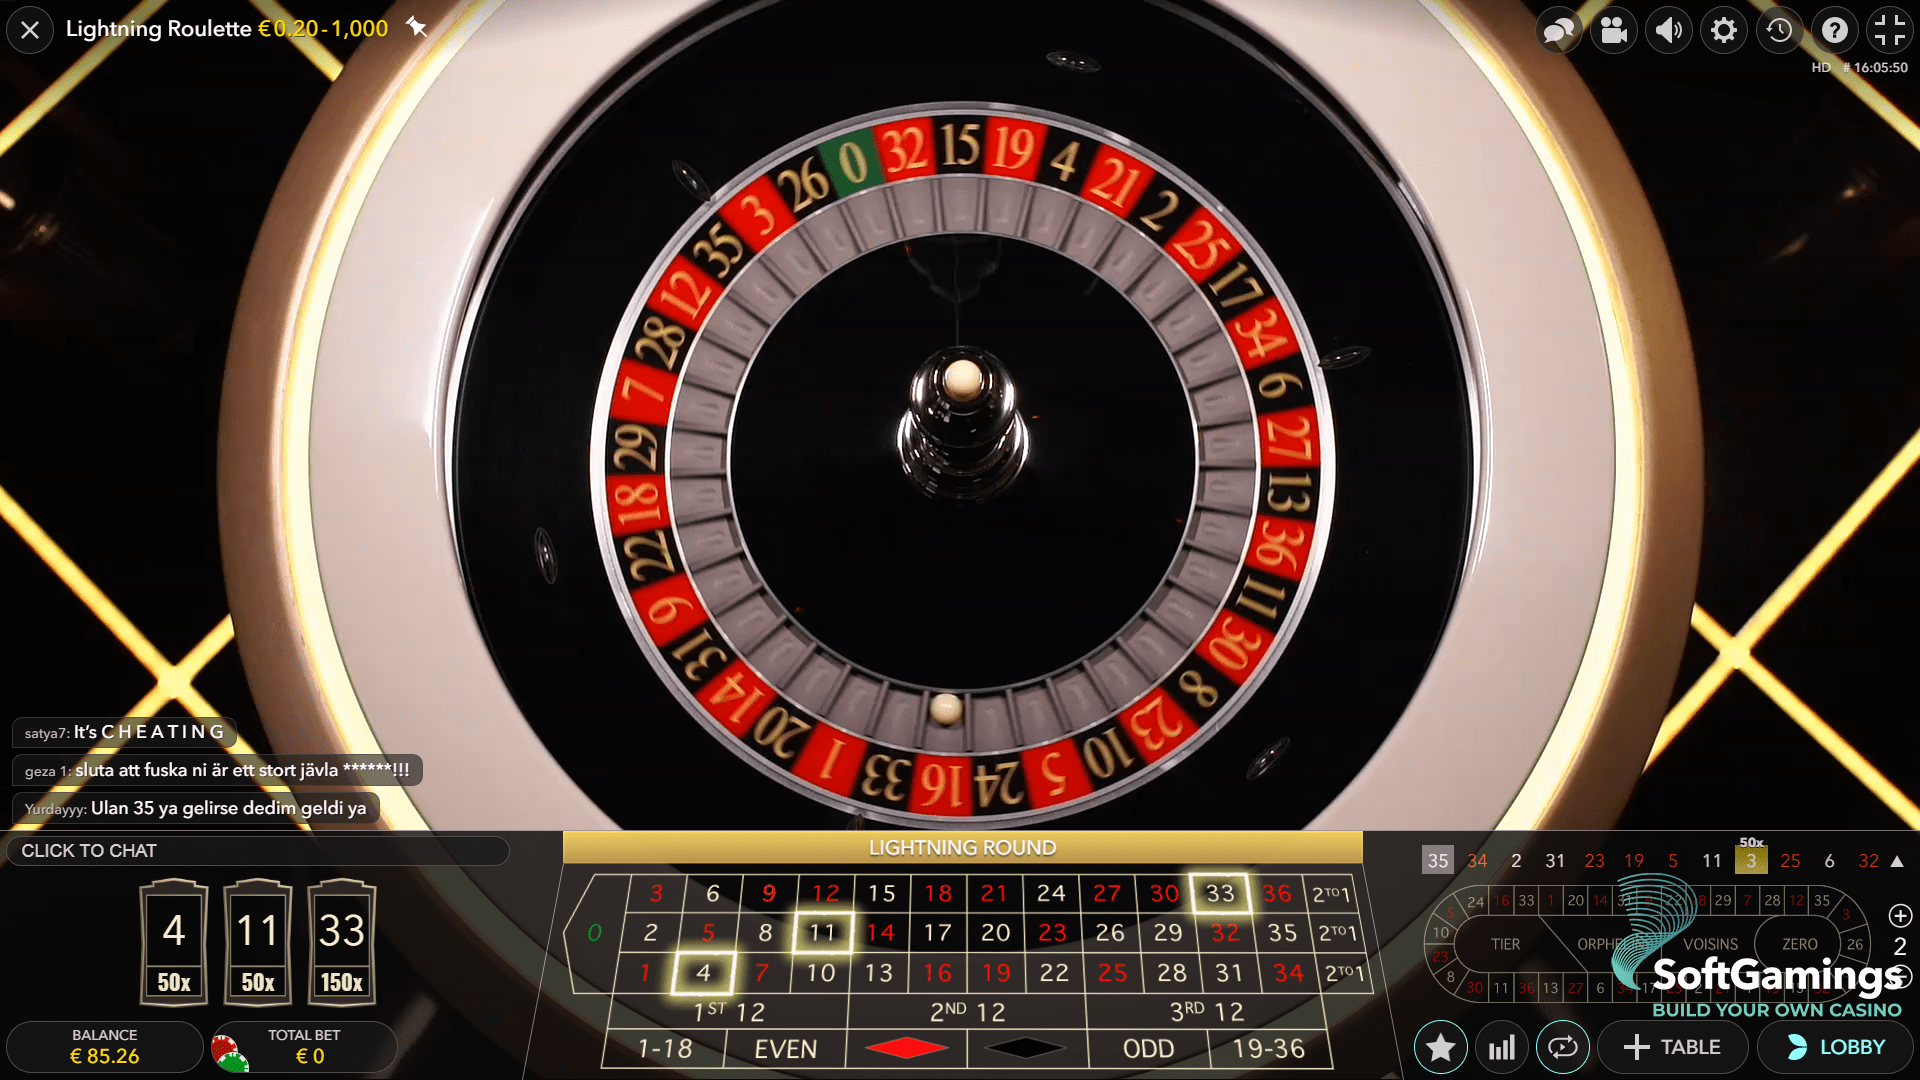 TOTO Casino Lightning Roulette